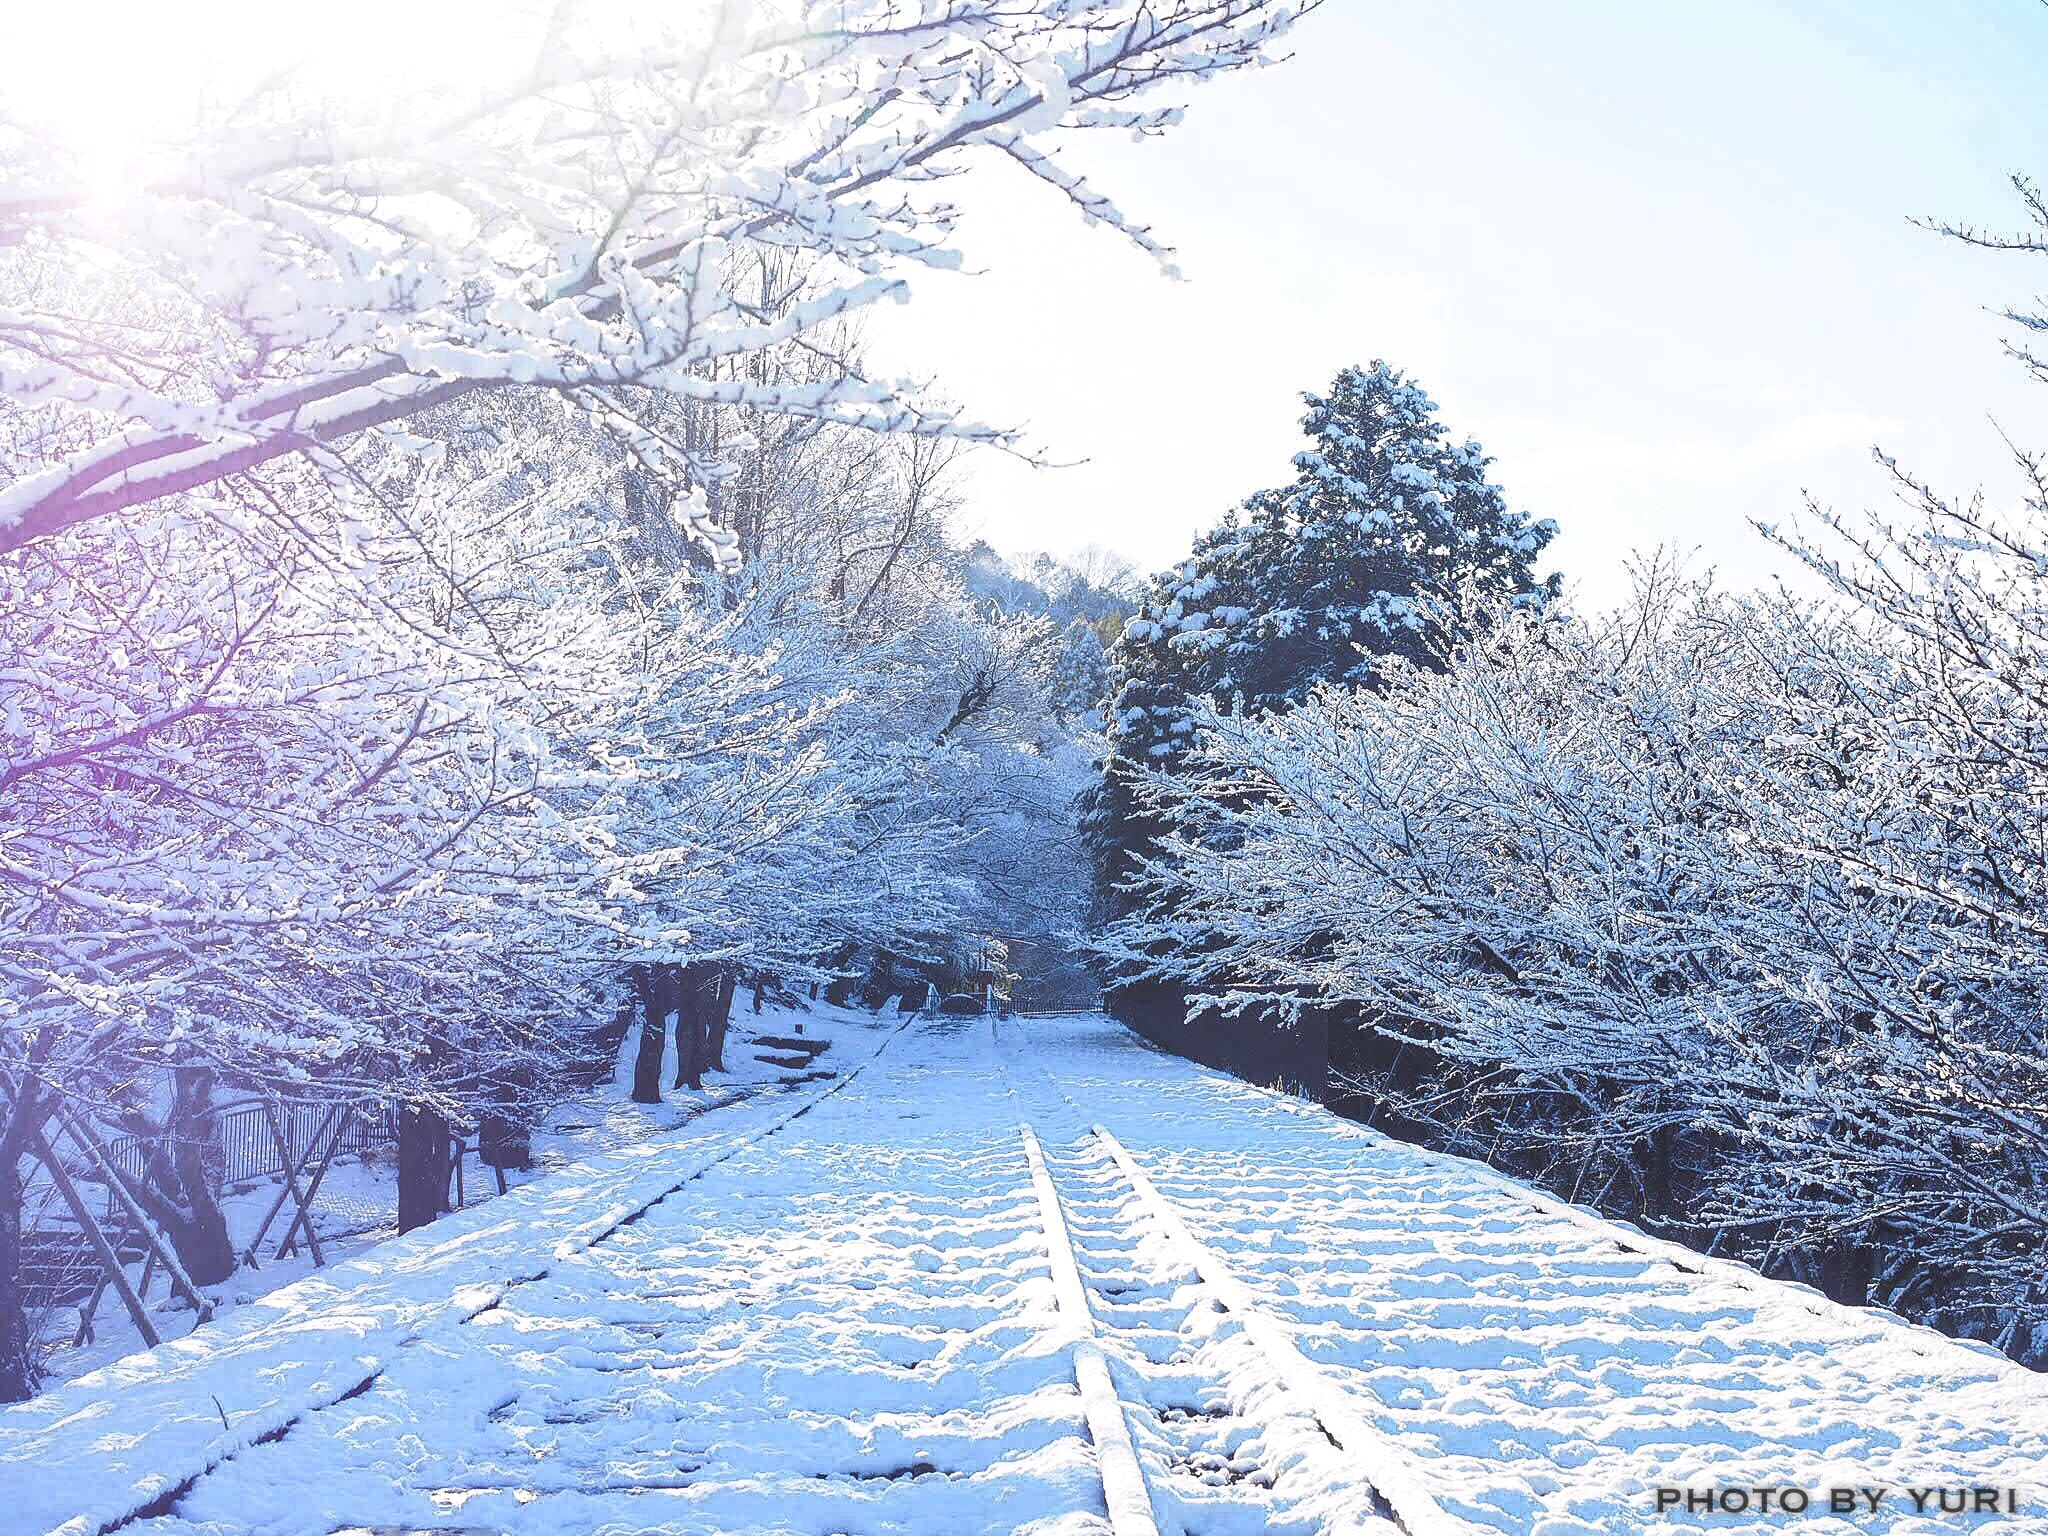 おすすめの京都の雪景色 写真撮影スポットと注意すべき時間帯 服装について